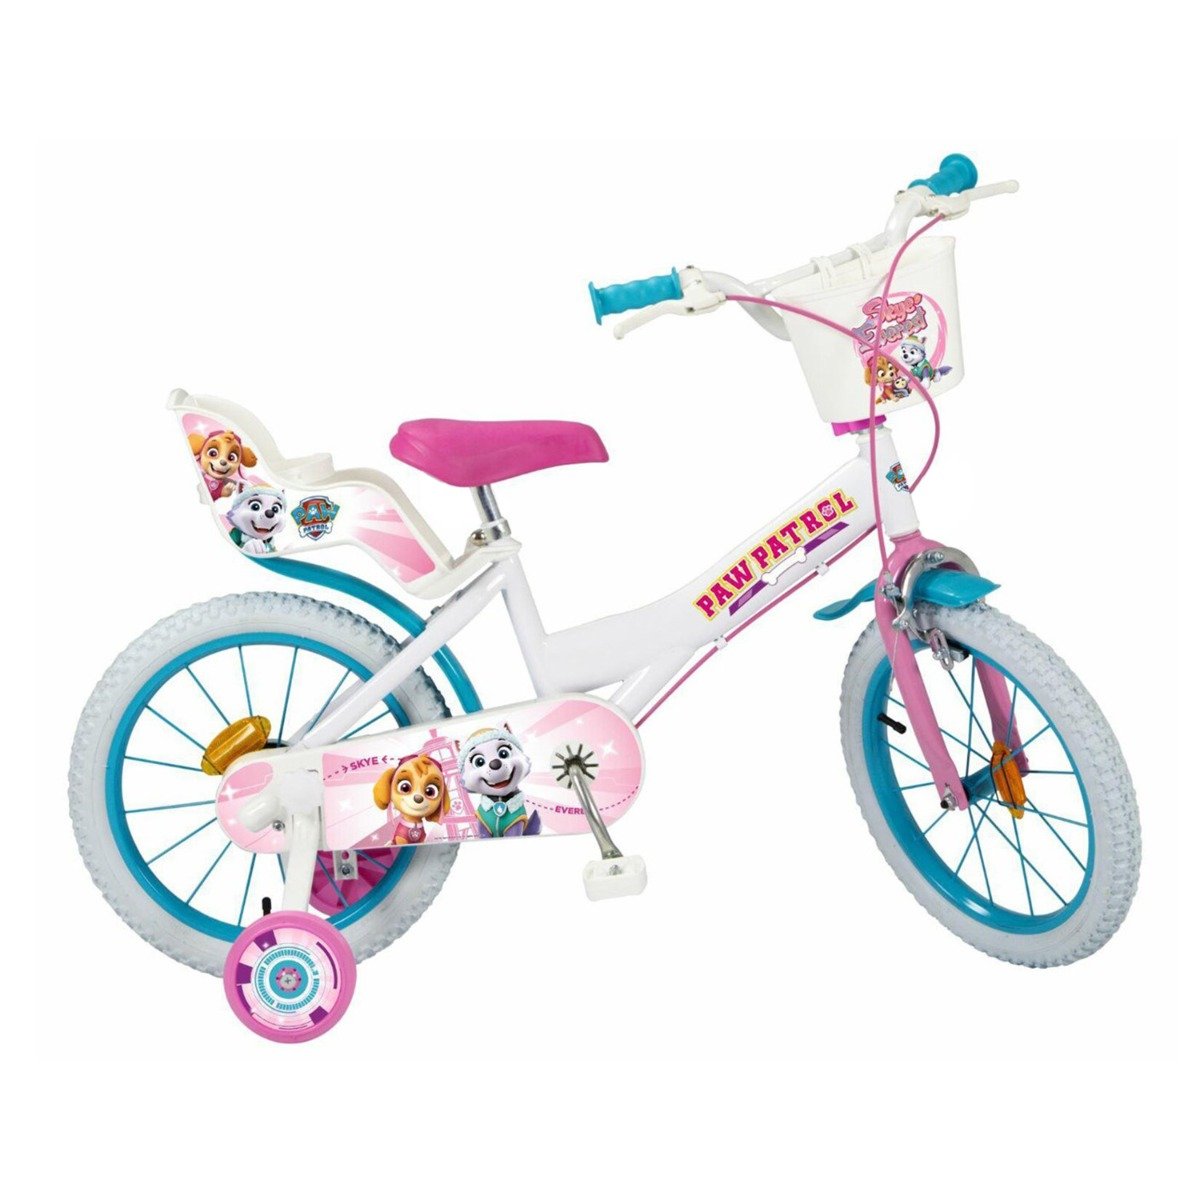 Bicicleta copii, Toimsa, Paw Patrol, 16 inch, Roz